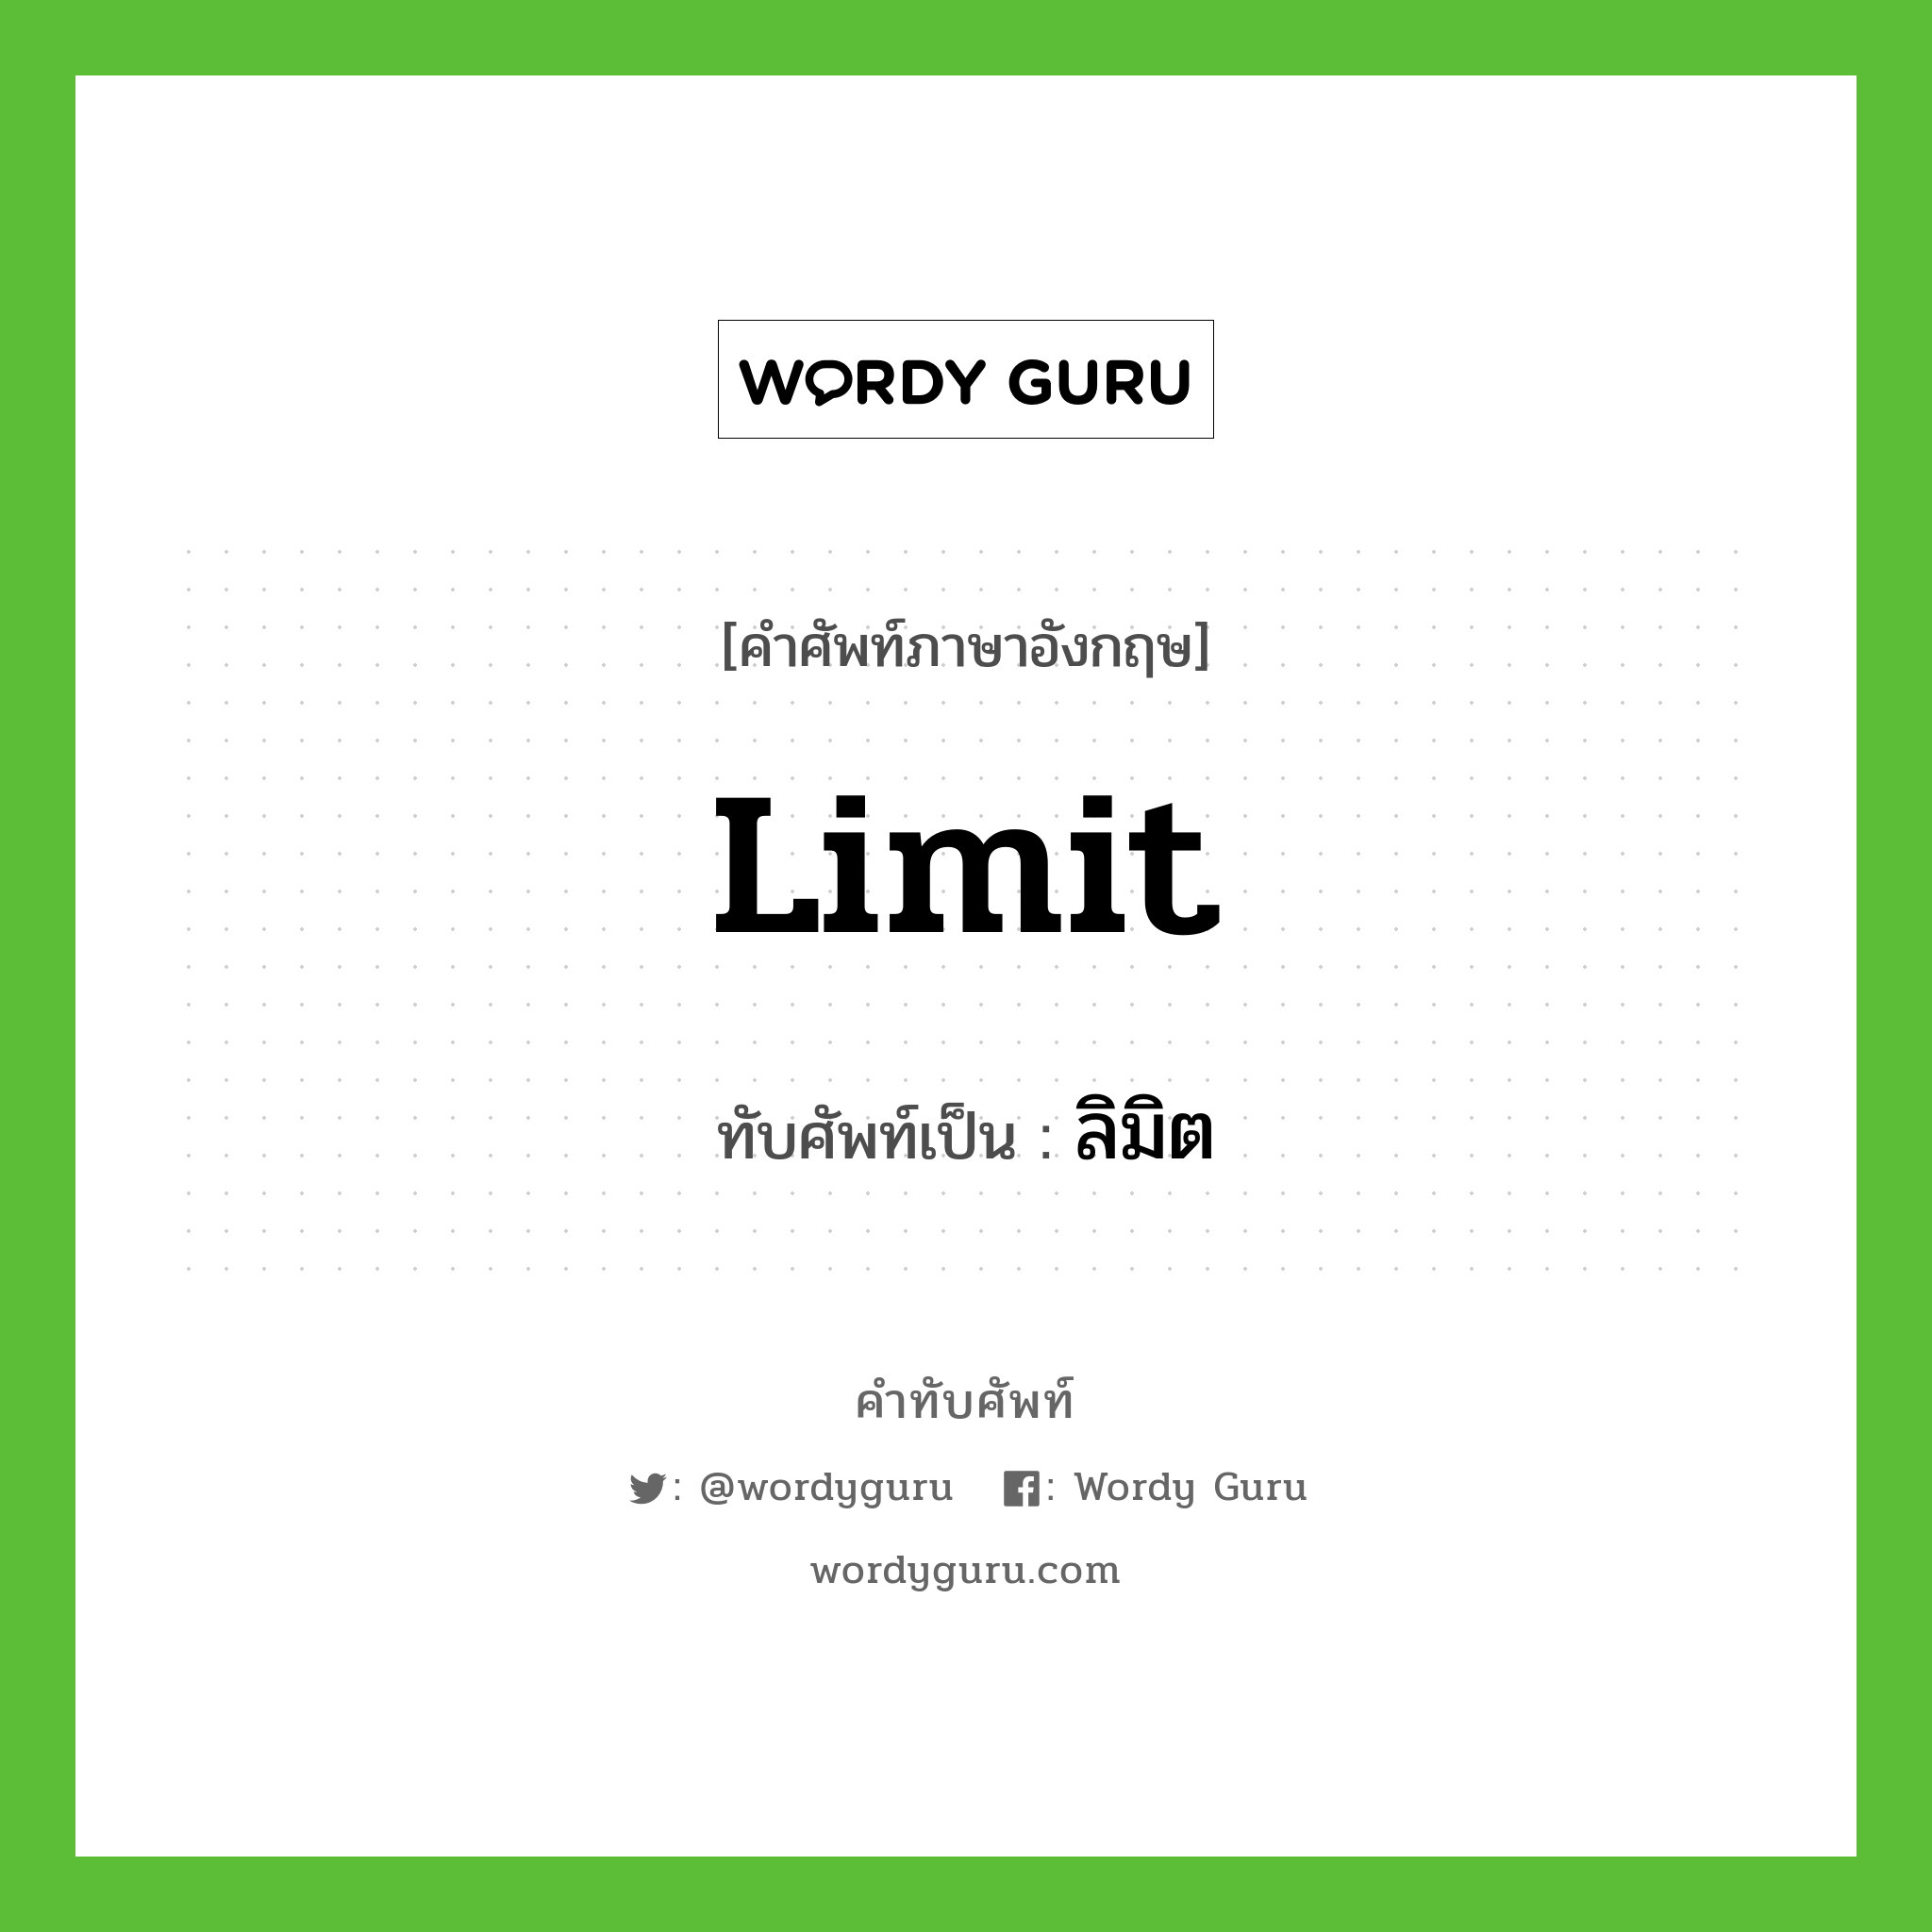 limit เขียนเป็นคำไทยว่าอะไร?, คำศัพท์ภาษาอังกฤษ limit ทับศัพท์เป็น ลิมิต